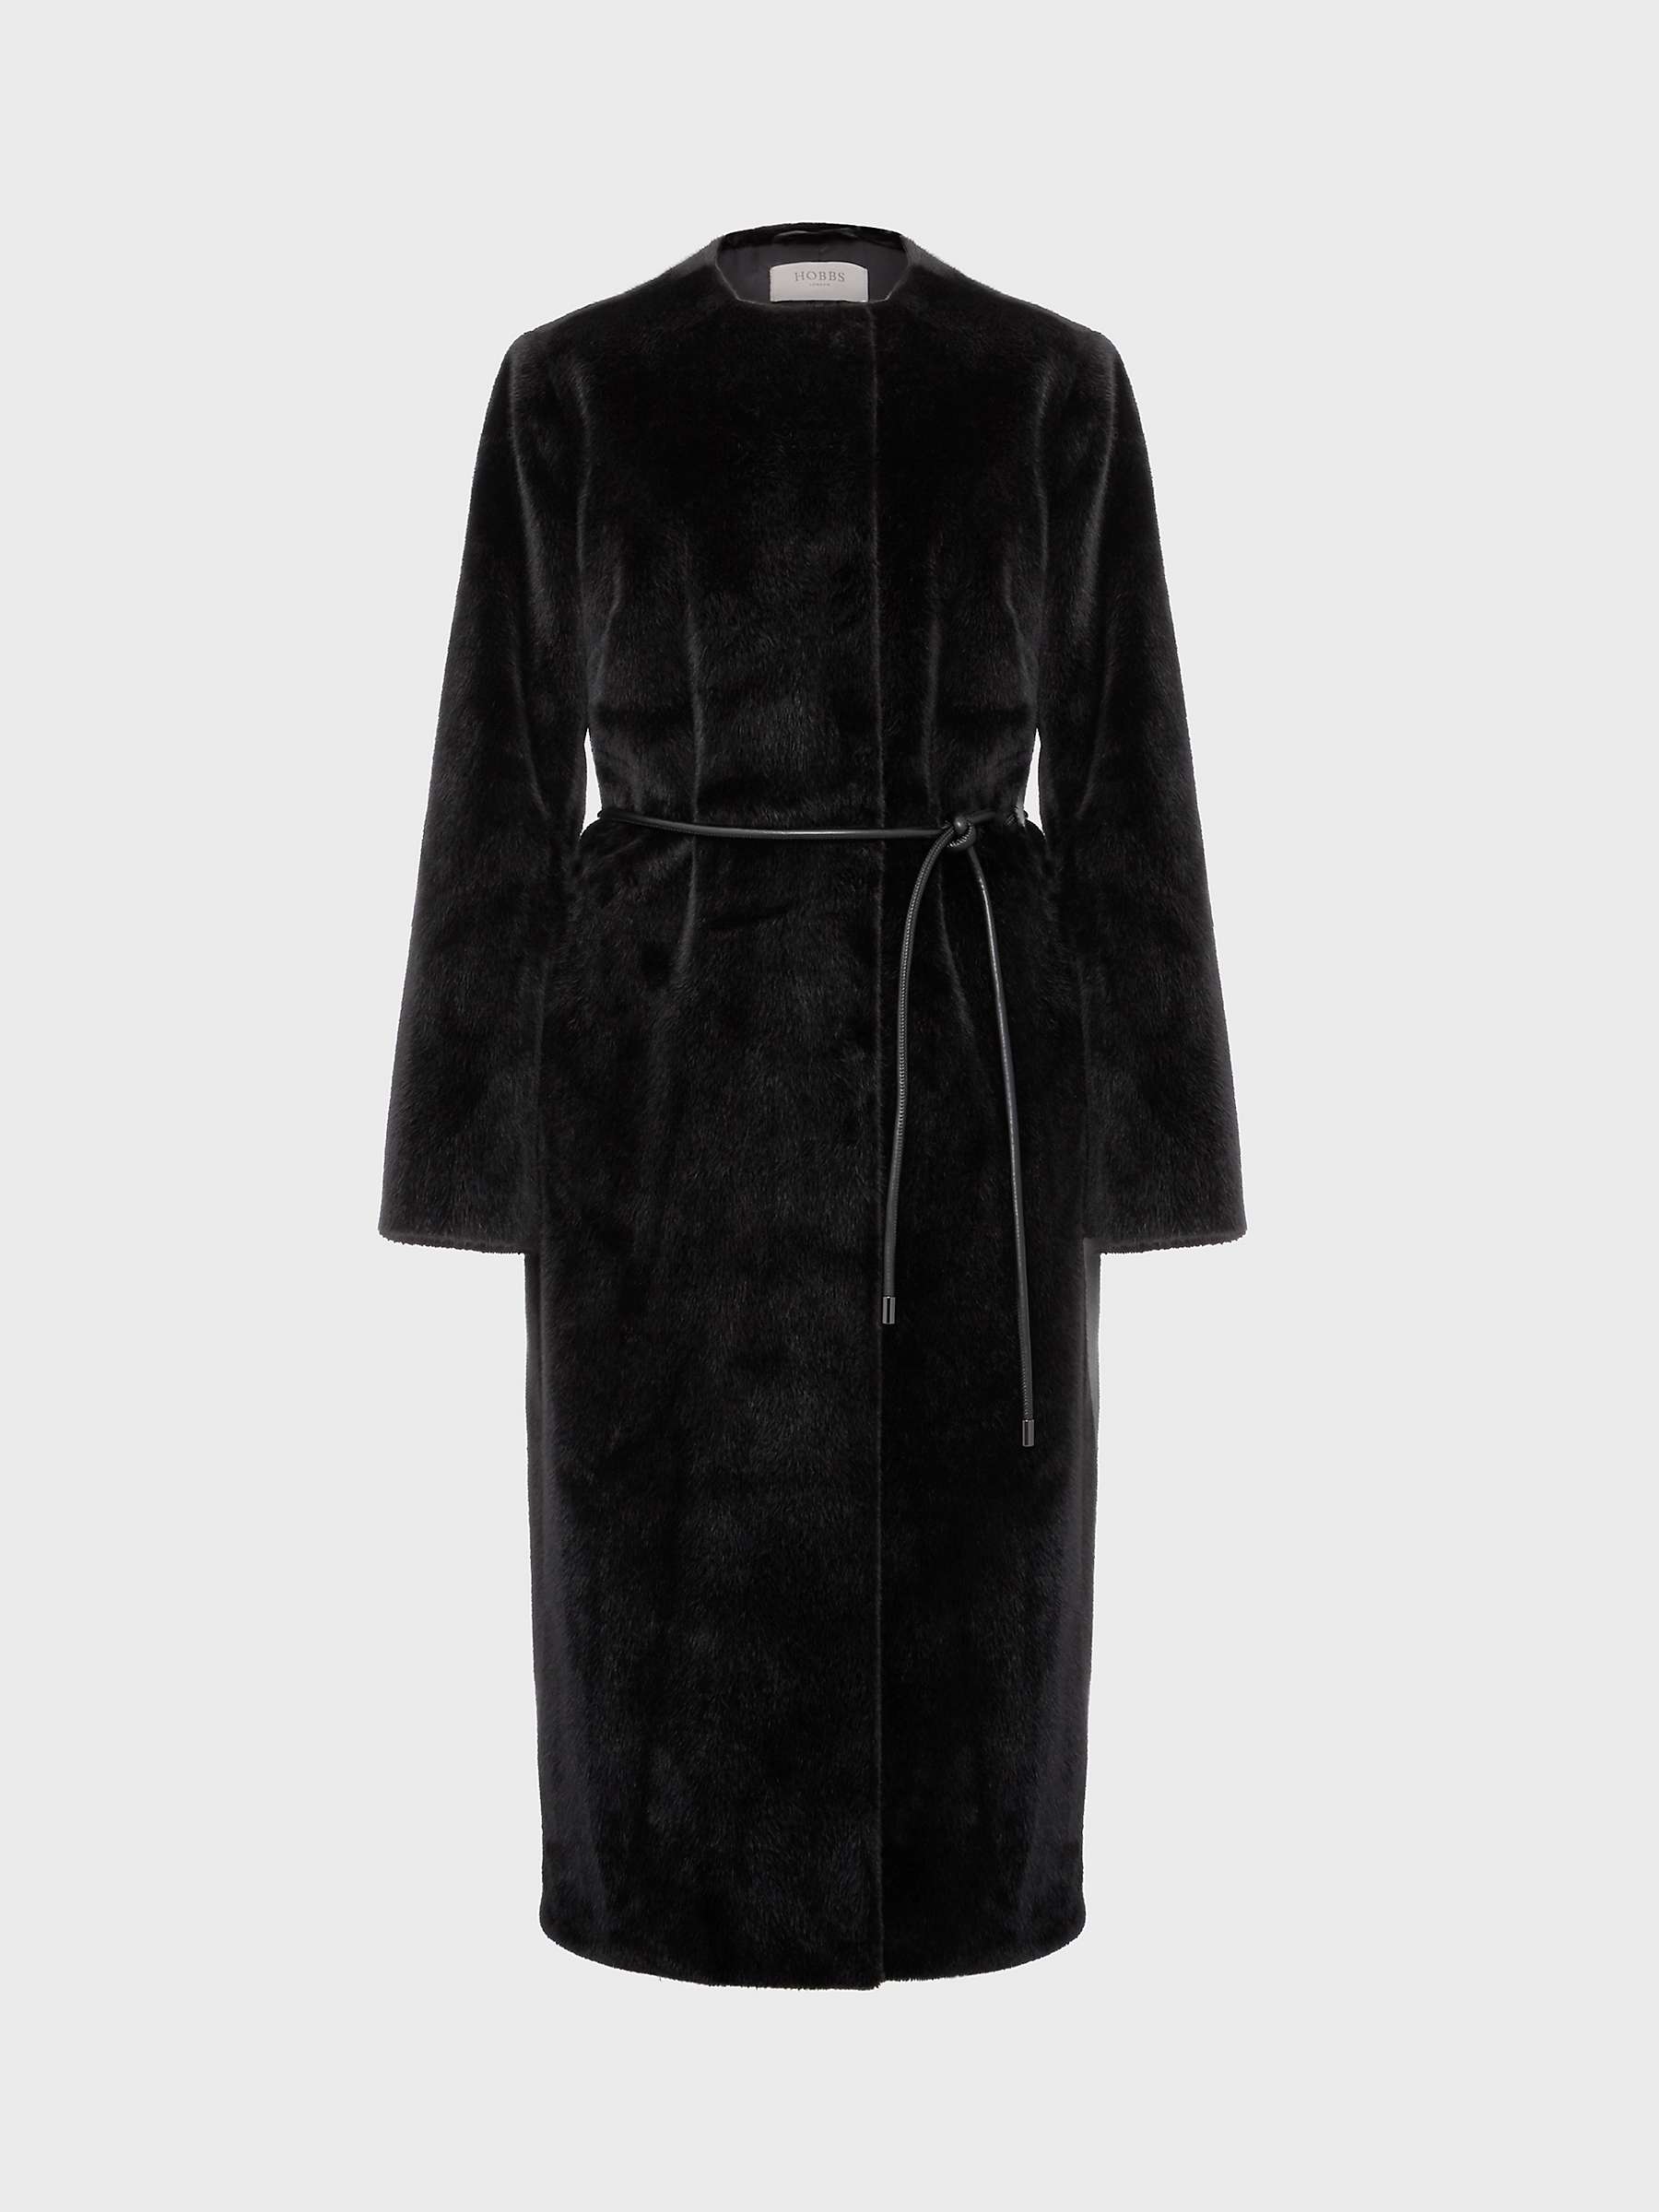 Hobbs Robin Fur Coat, Black at John Lewis & Partners